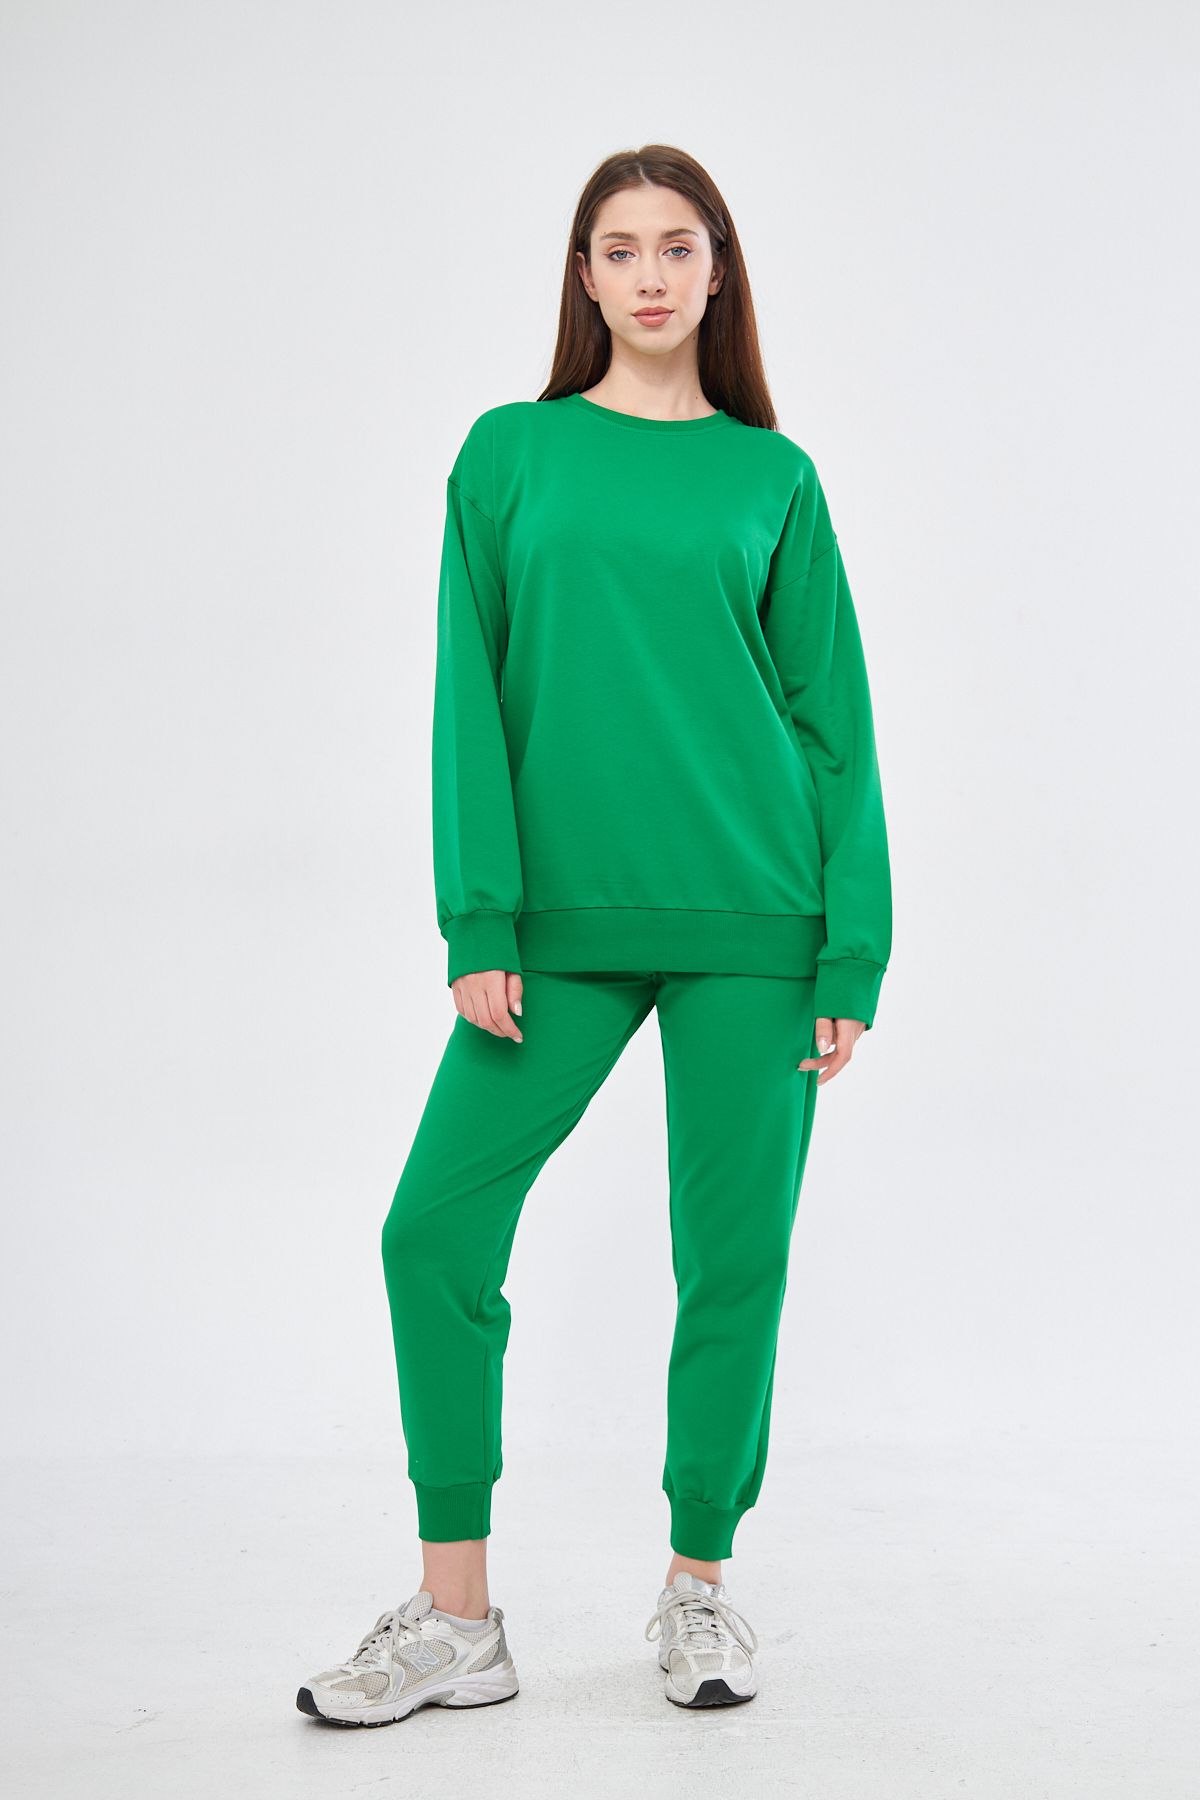 Esla Tekstil Benetton Yeşili Rengi Eşofman Takımı